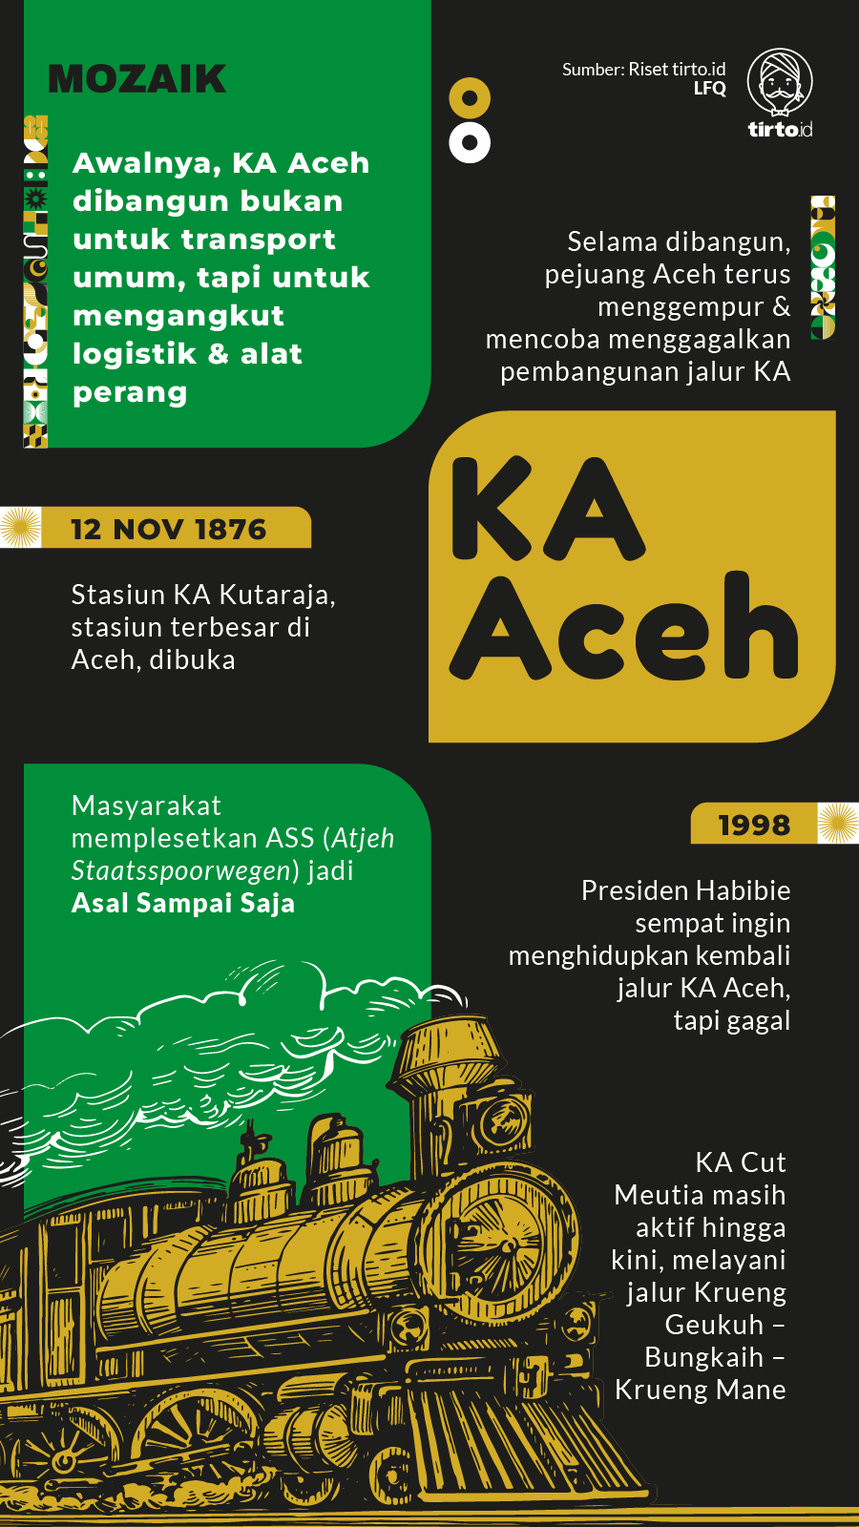 Infografik Mozaik Kereta Aceh